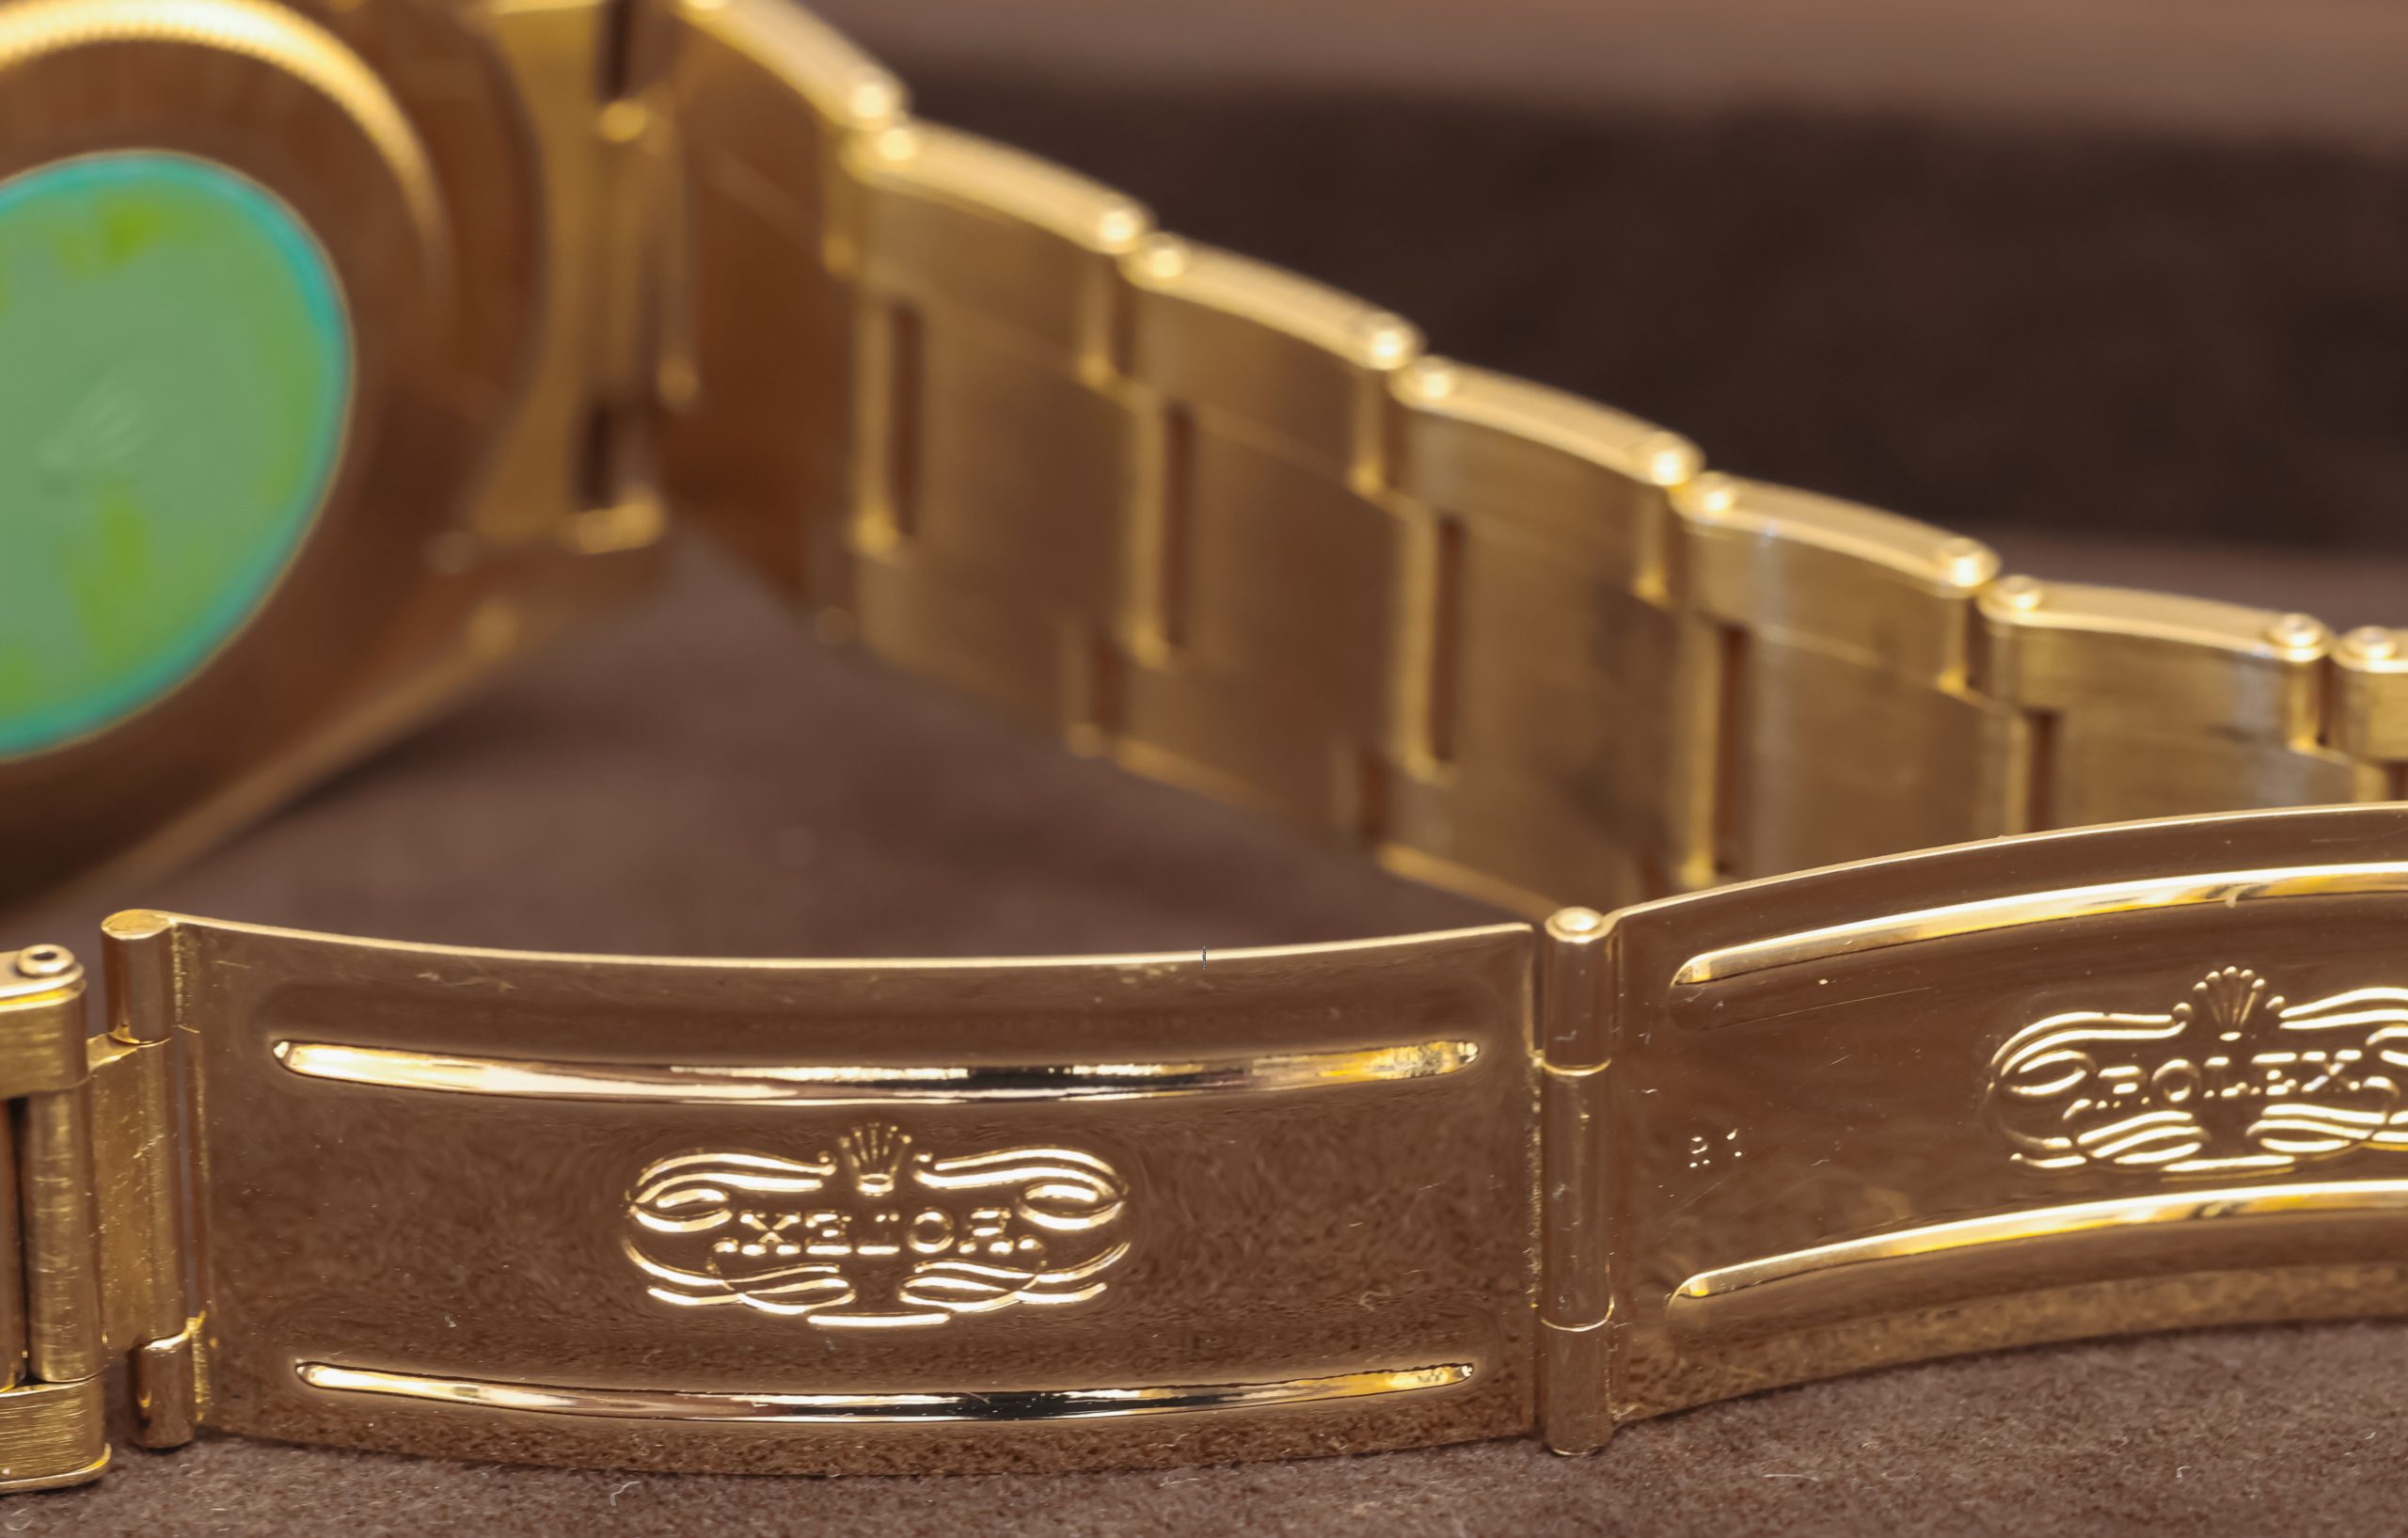 16718-Rolex-Gold-GMT-Master-II